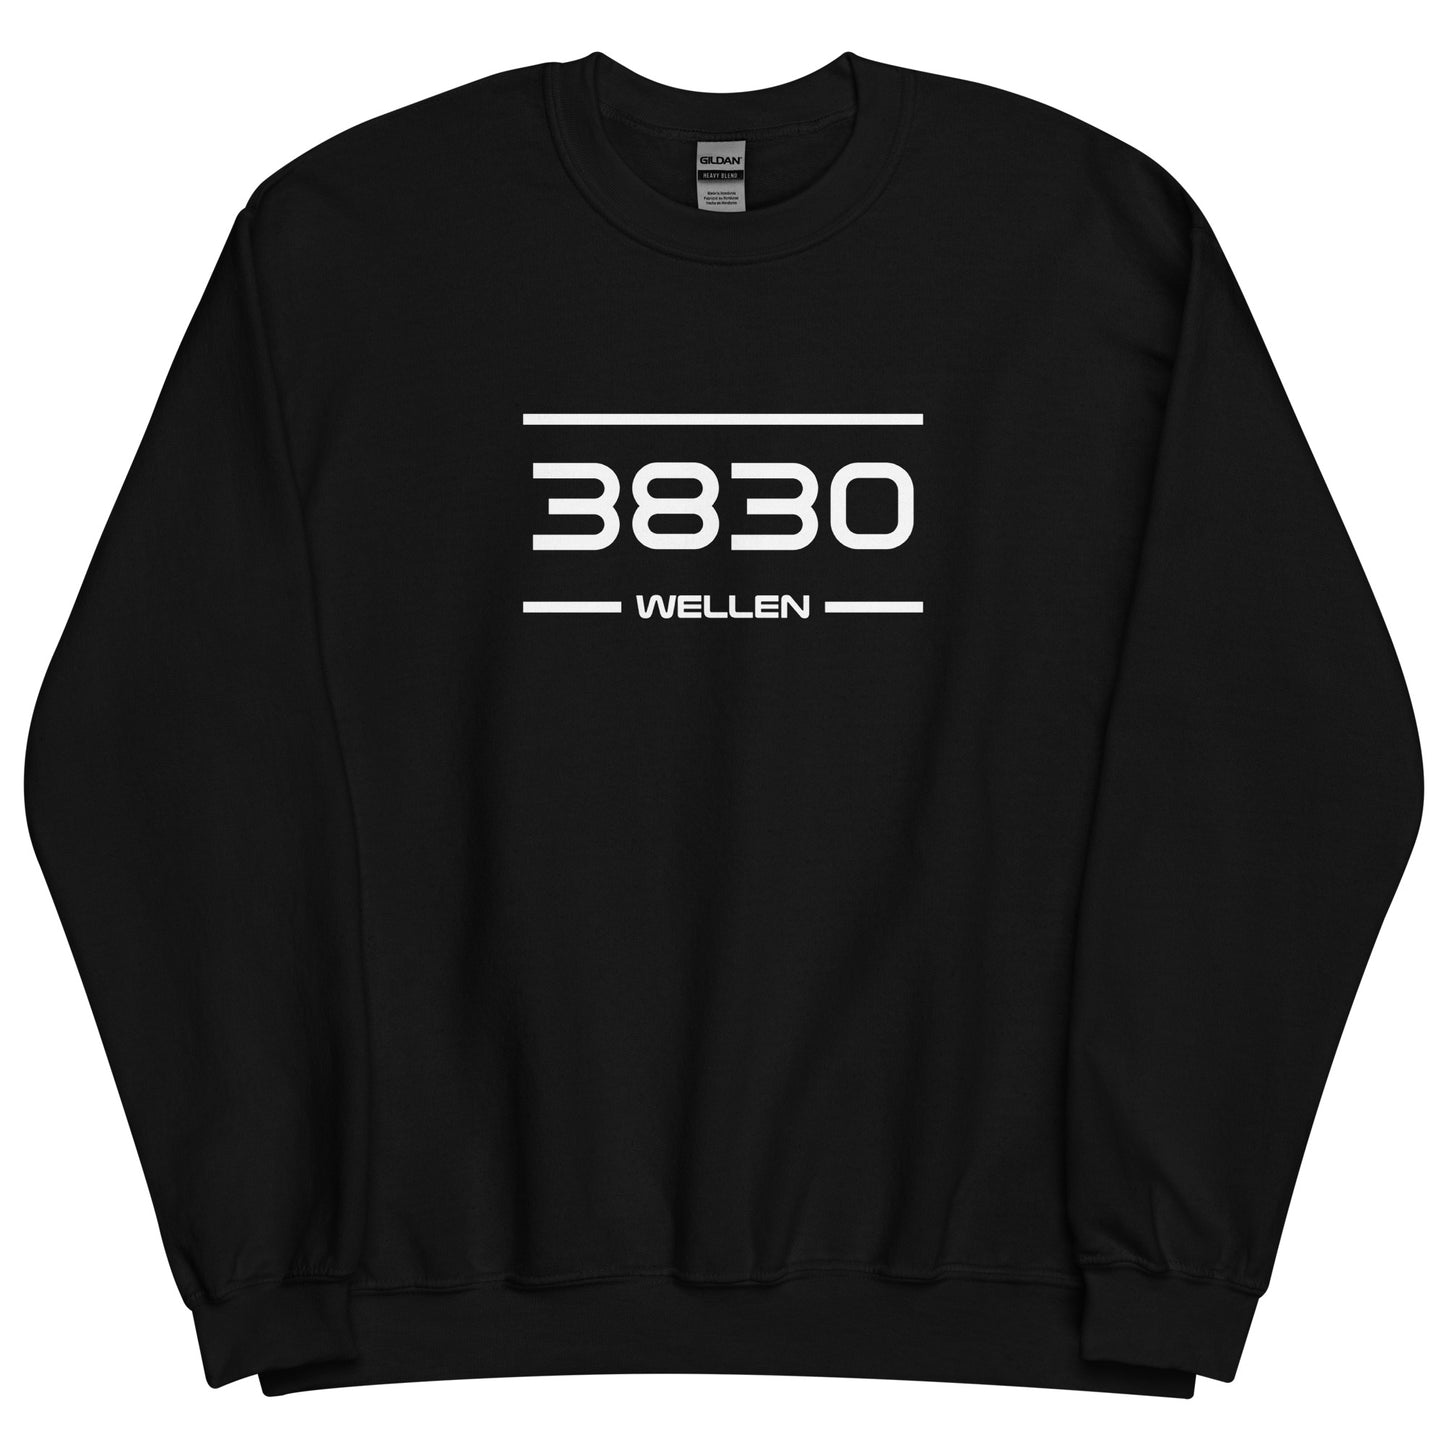 Sweater - 3830 - Wellen (M/V)